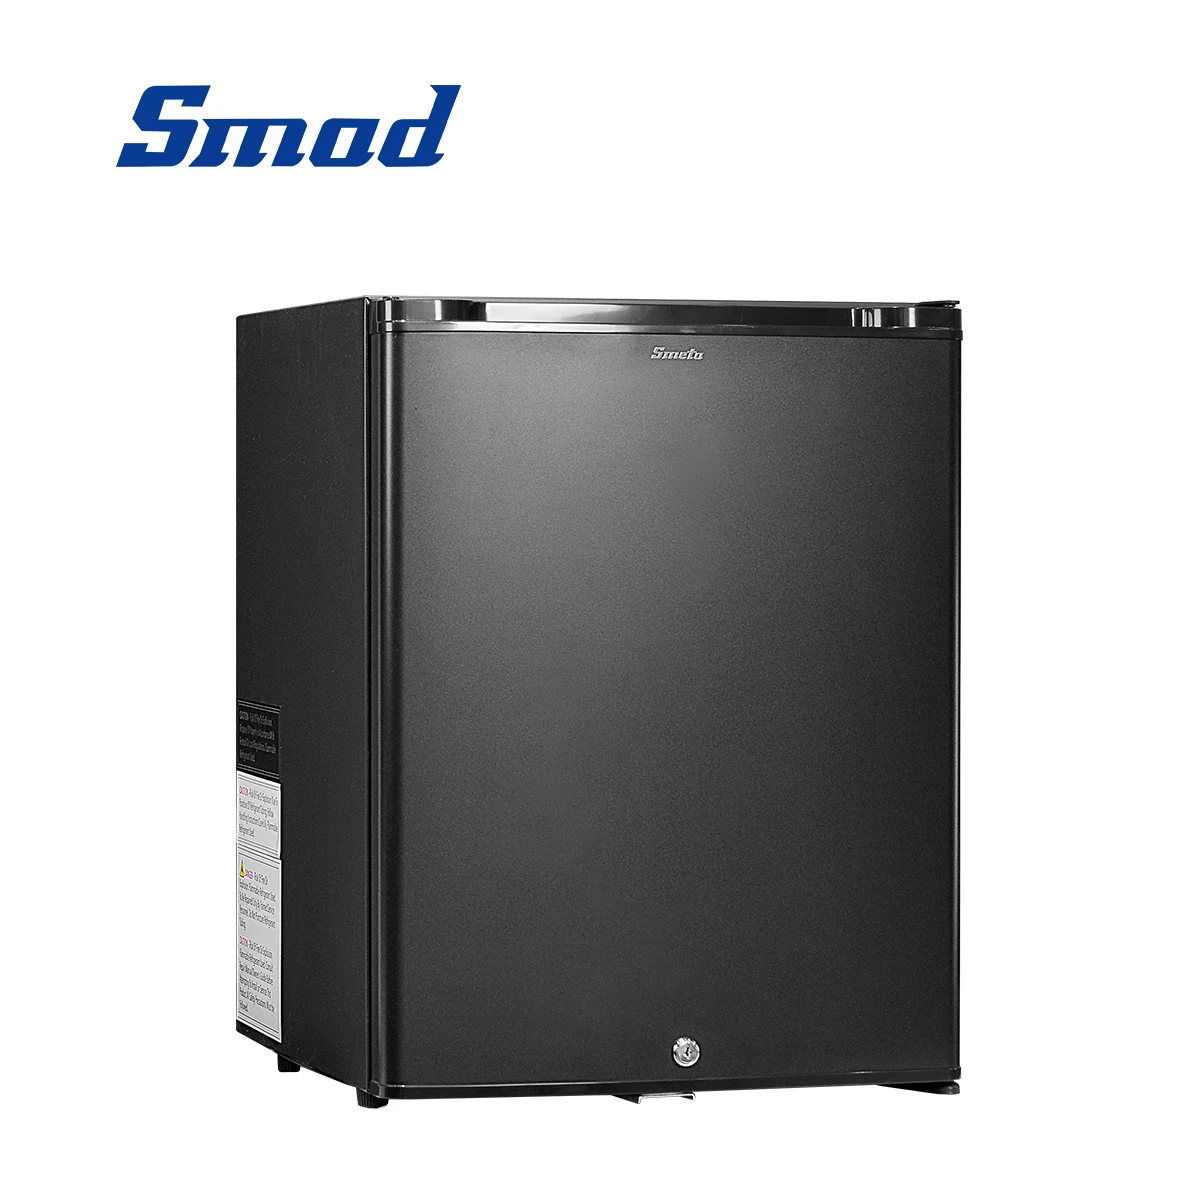 

Компактный мини-холодильник Smad 60 л Nevera с замком, портативный холодильник для комнаты, поглощающие Однодверные холодильники, бесплатная доставка